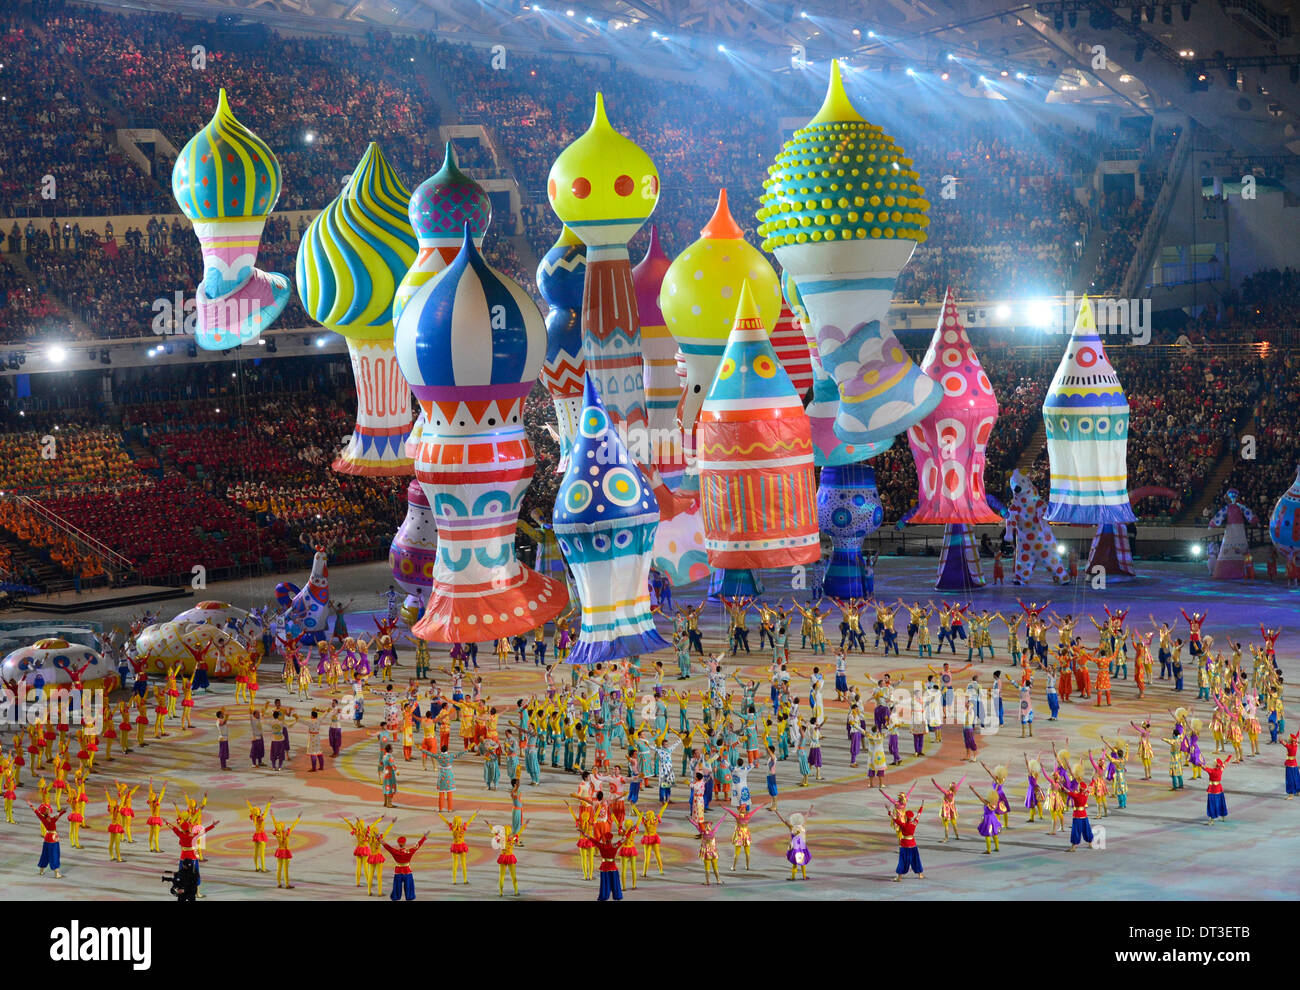 Era Uma Vezos XXII Jogos Olímpicos de Inverno: Sochi 2014 - Surto  Olímpico